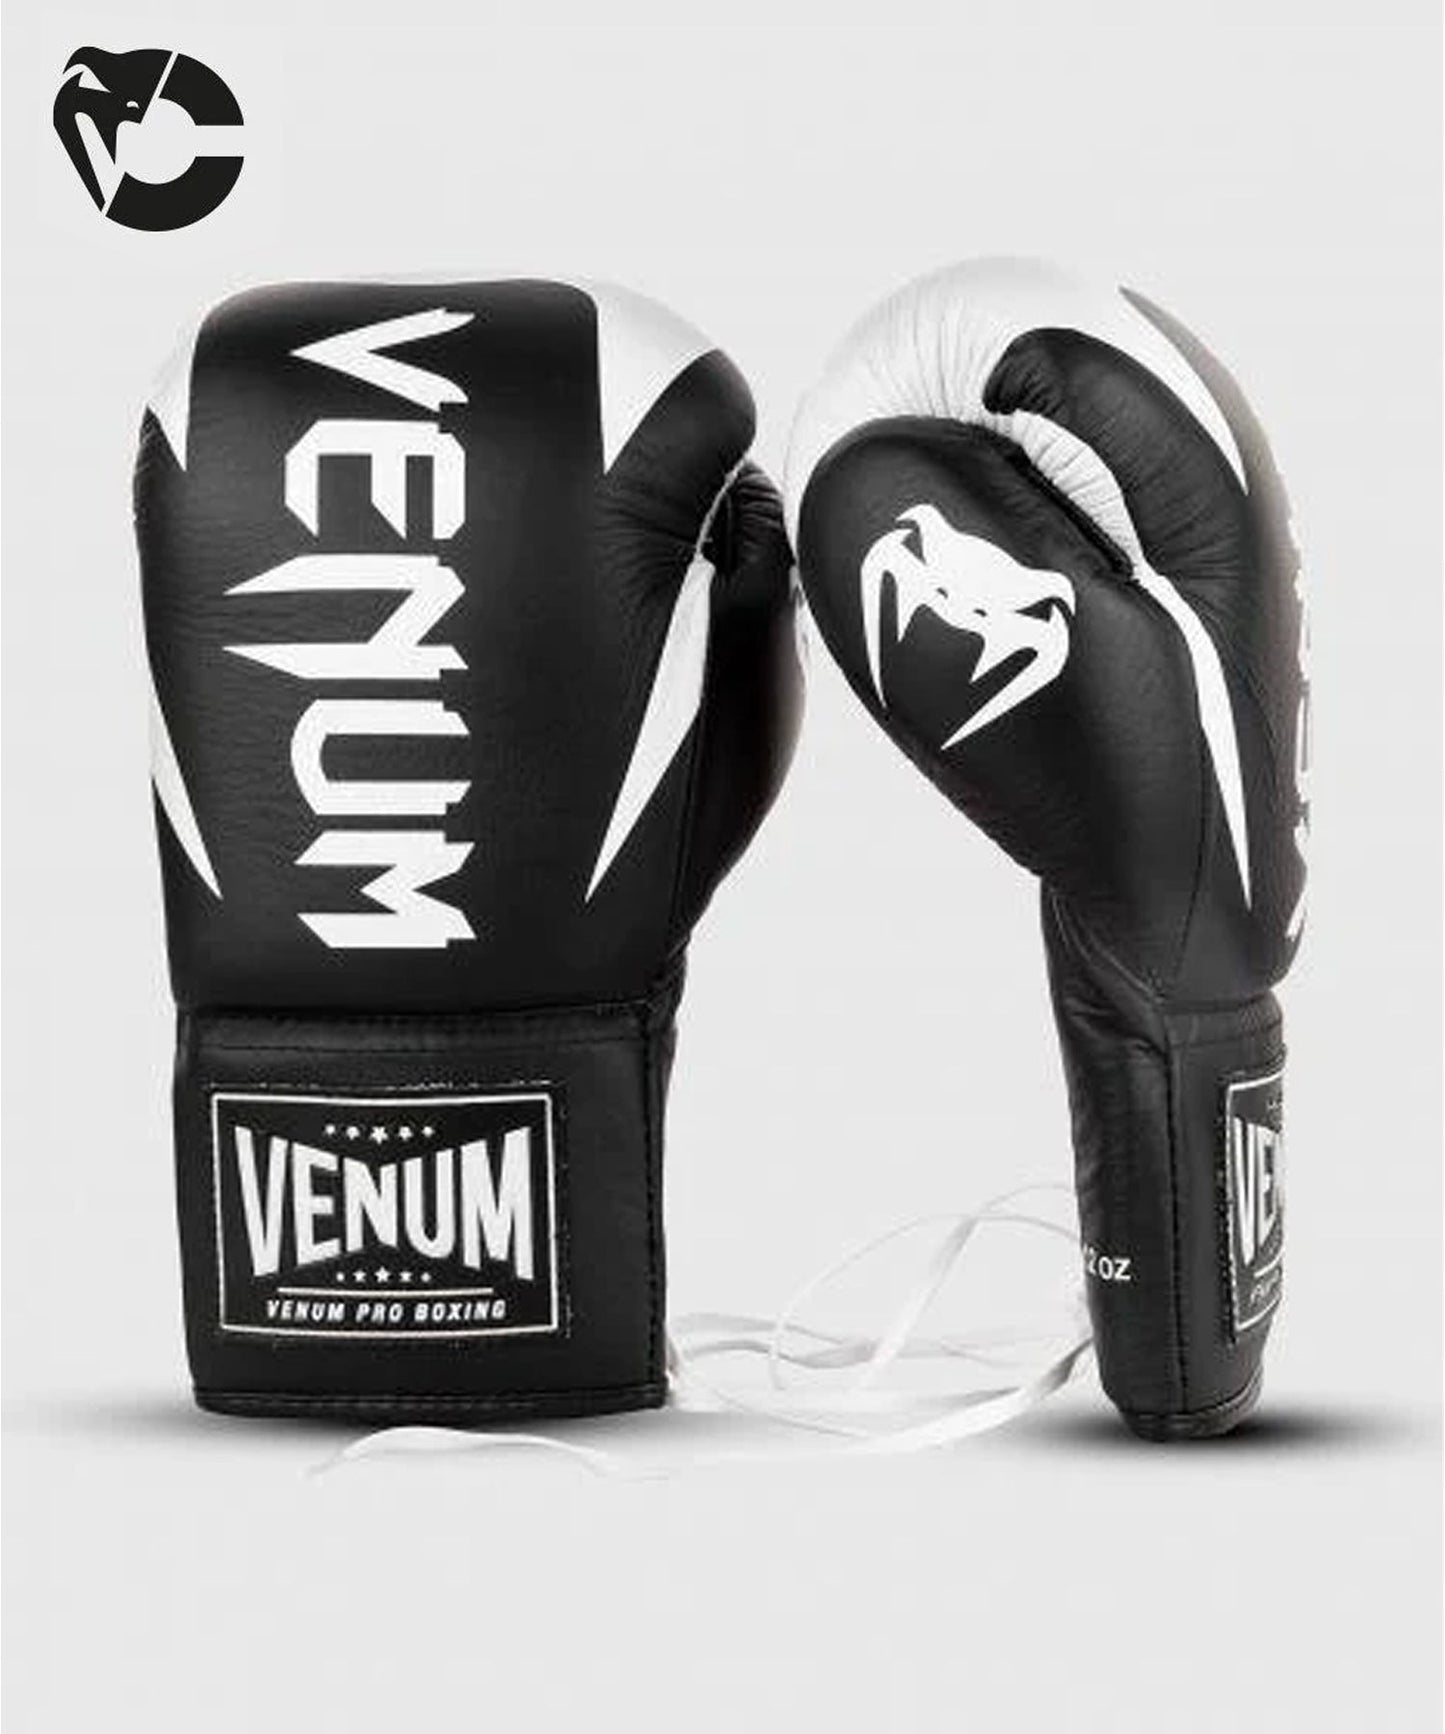 Guantes de boxeo profesionales custom Venum Hammer con cordones